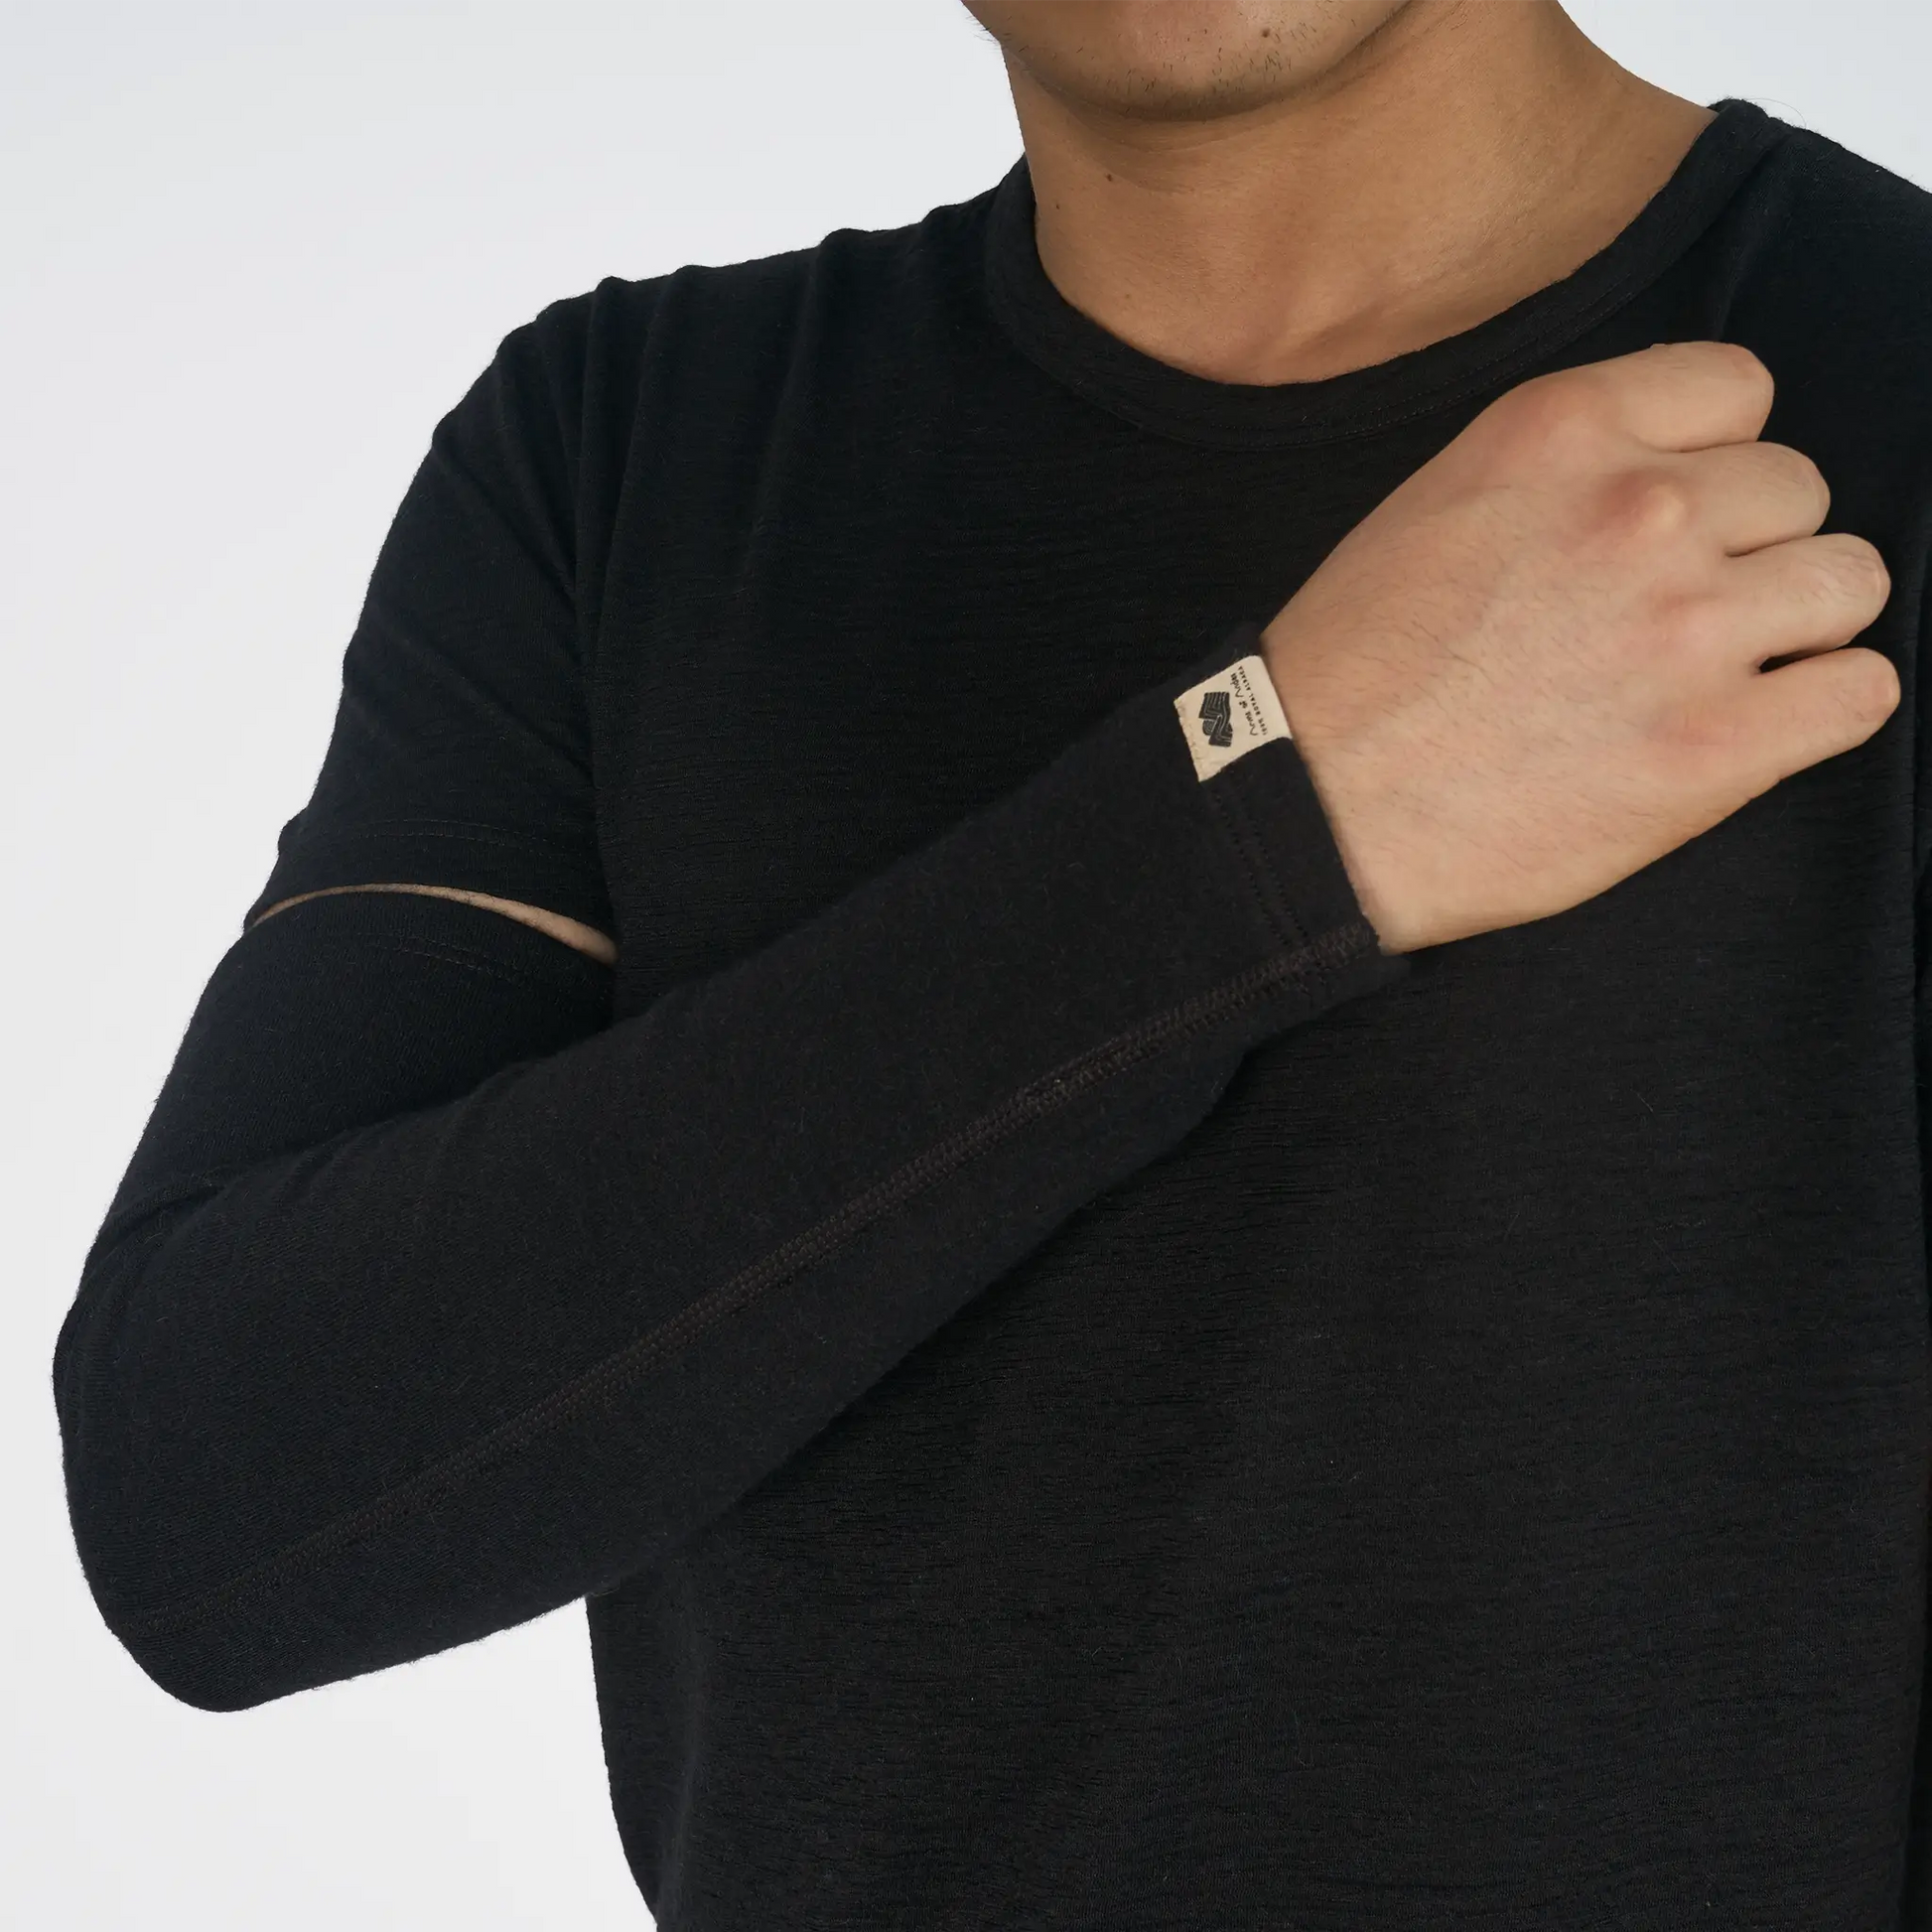 mens warmest sleeve color black